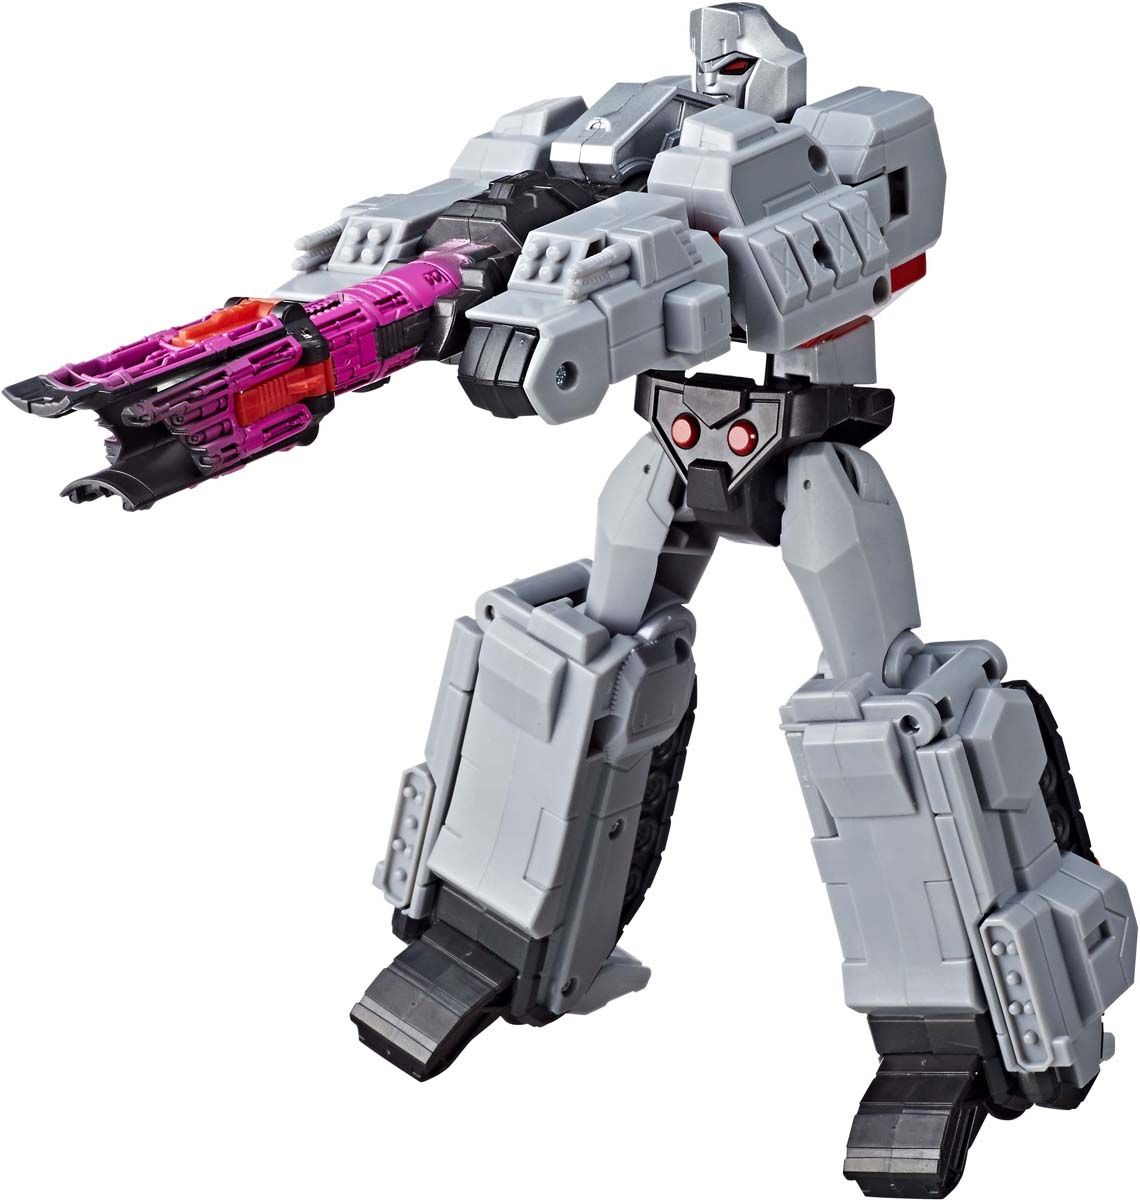  Transformers Cyberverse Megatron, E1885_E2066